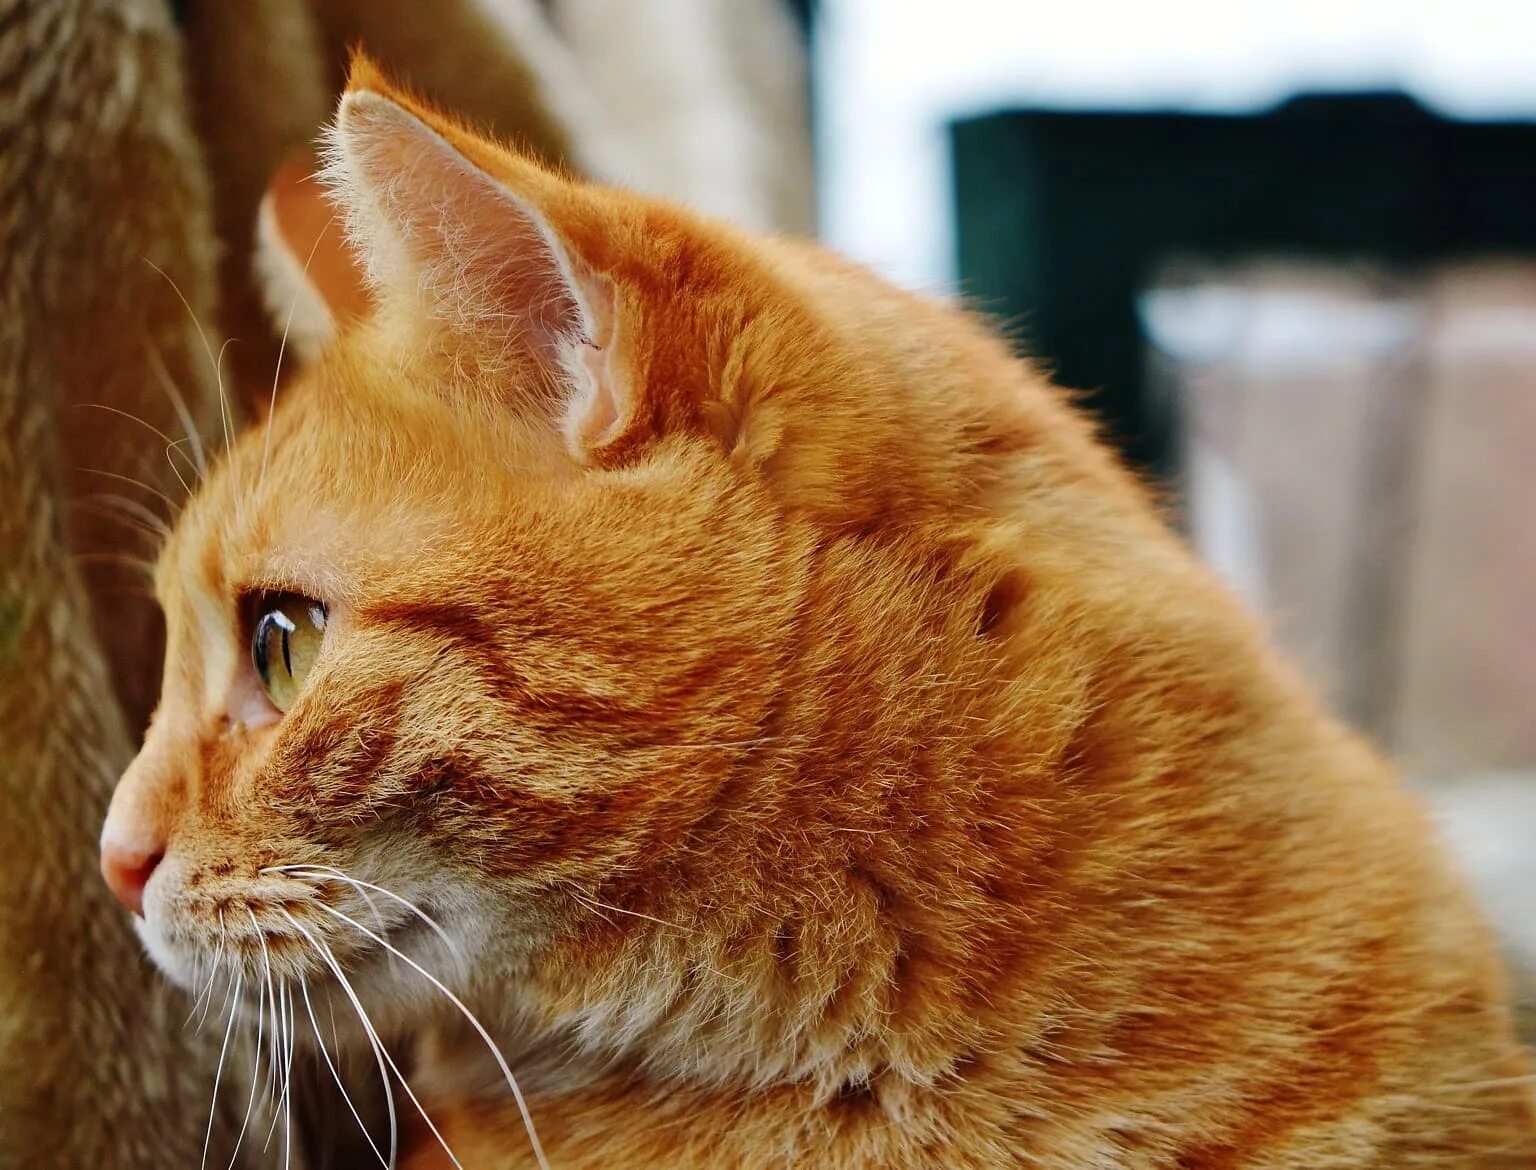 Европейская короткошерстная кошка рыжая. Европейский короткошерстный кот рыжий. Европейская короткошерстная табби рыжий. Тигровый макрелевый табби рыжий. Порода кошек с рыжей шерстью